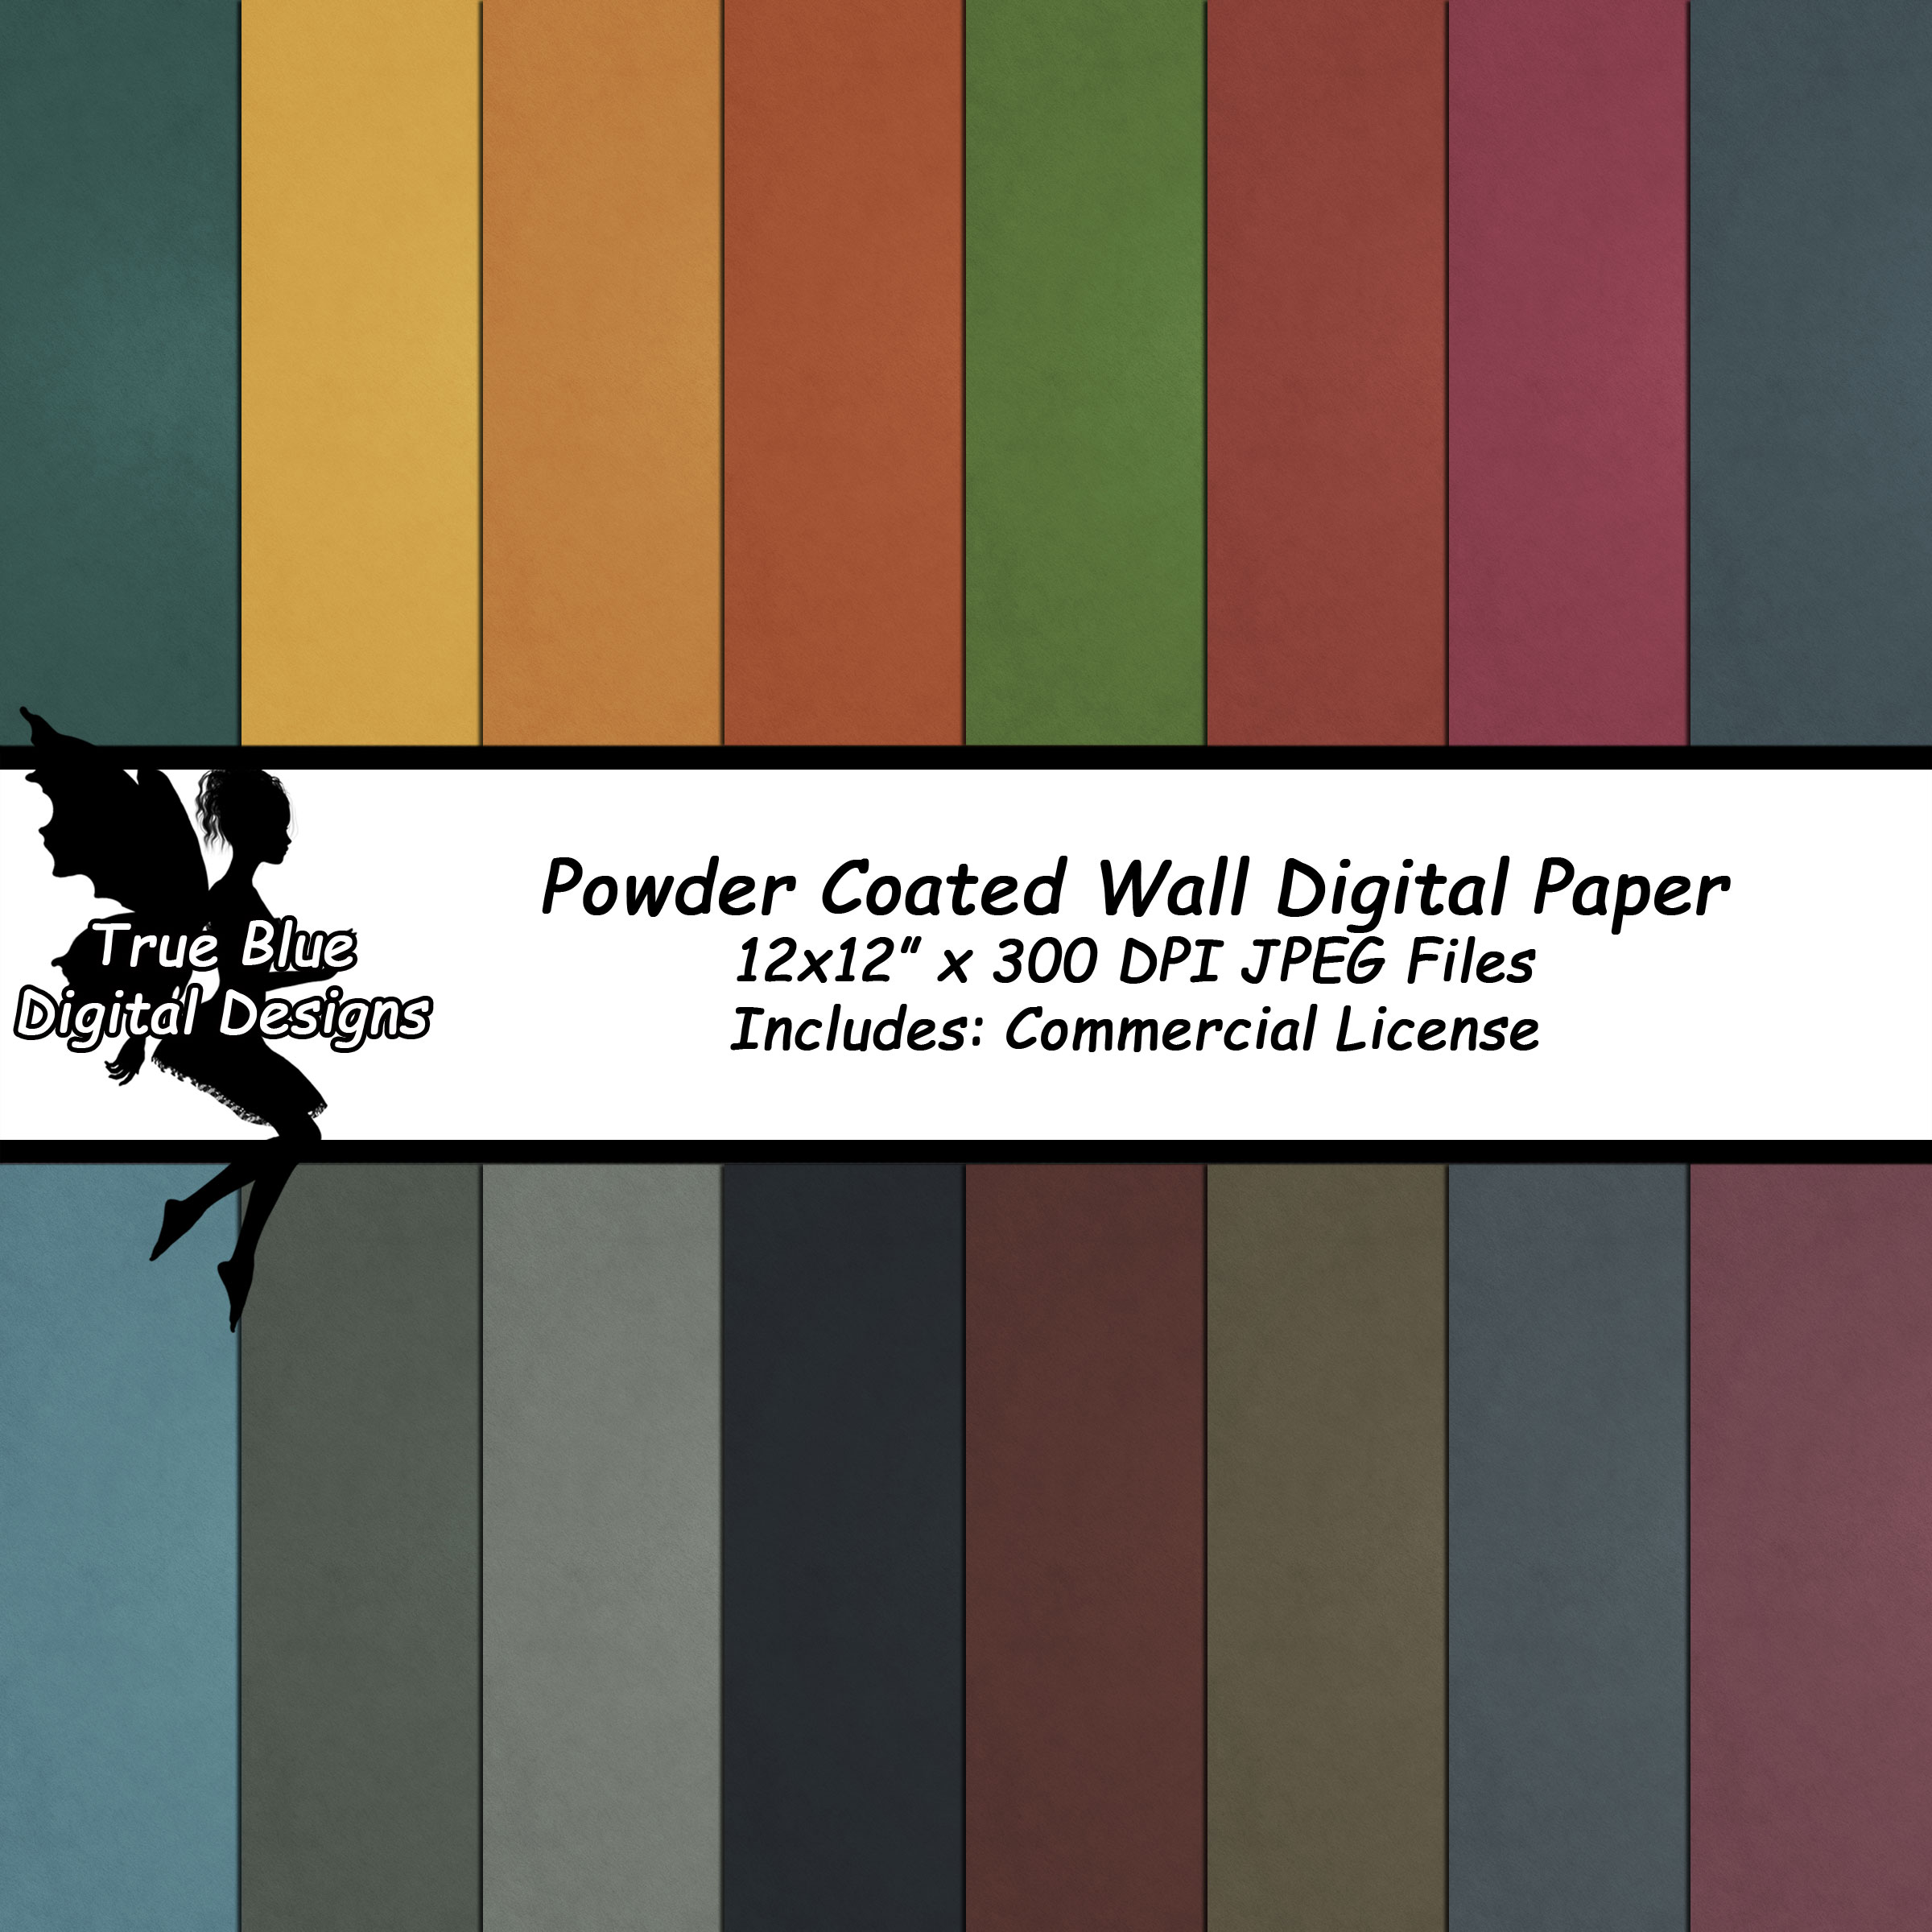 Powder Coated Walls Digital Paper